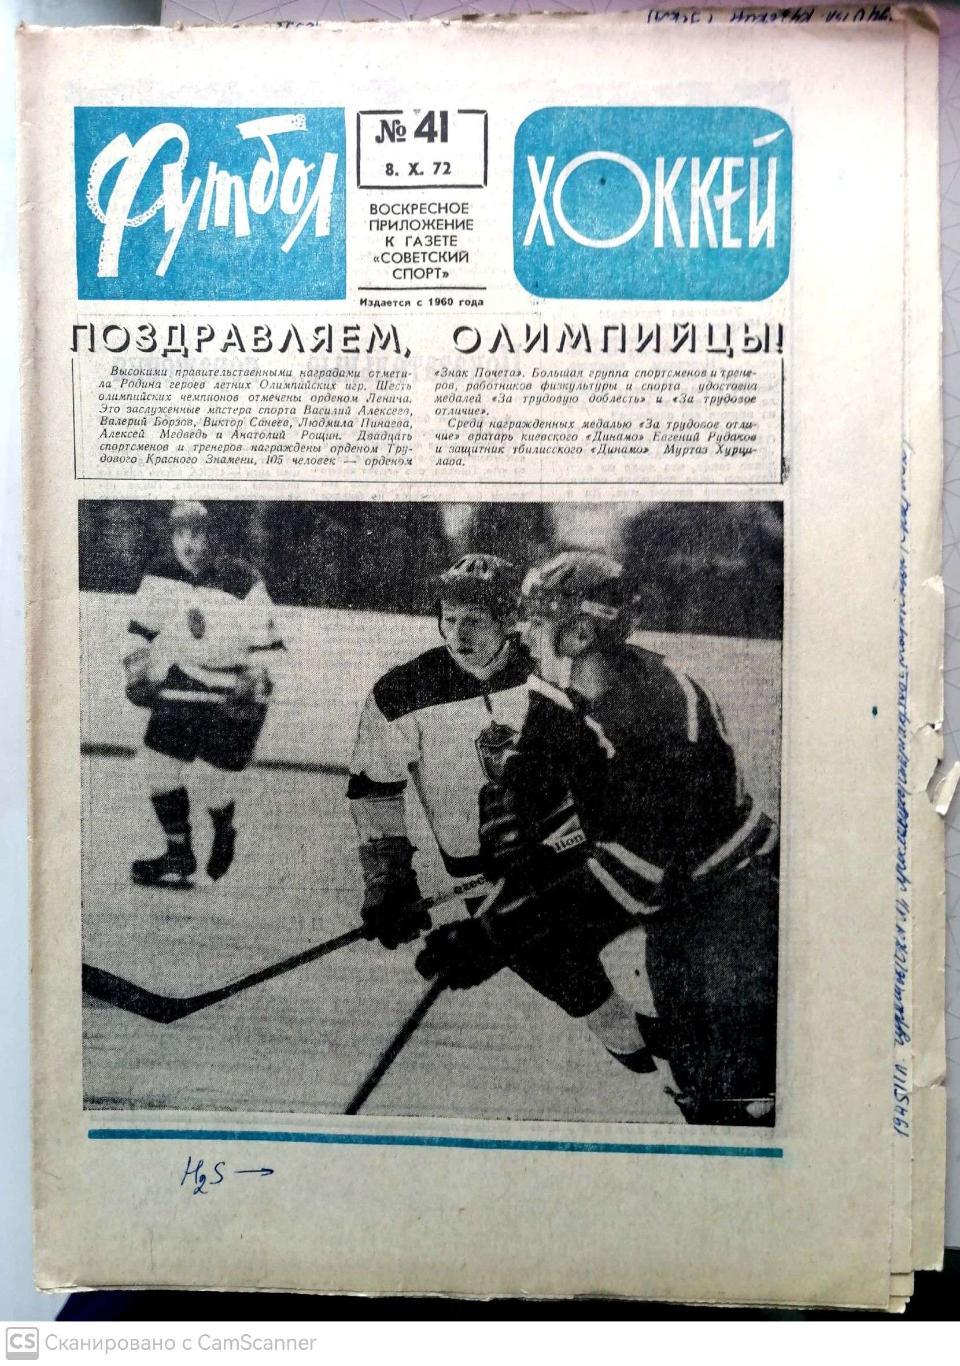 Еженедельник «Футбол-Хоккей». 1972 год. №41